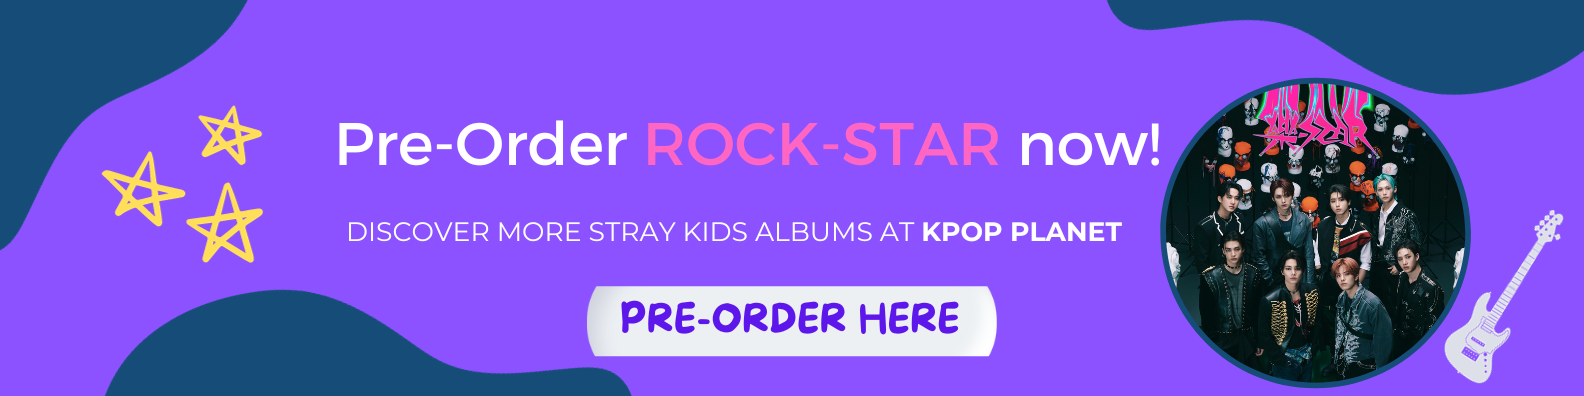 Stray Kids Release Teaser Images for New Mini Album 'Rock-Star